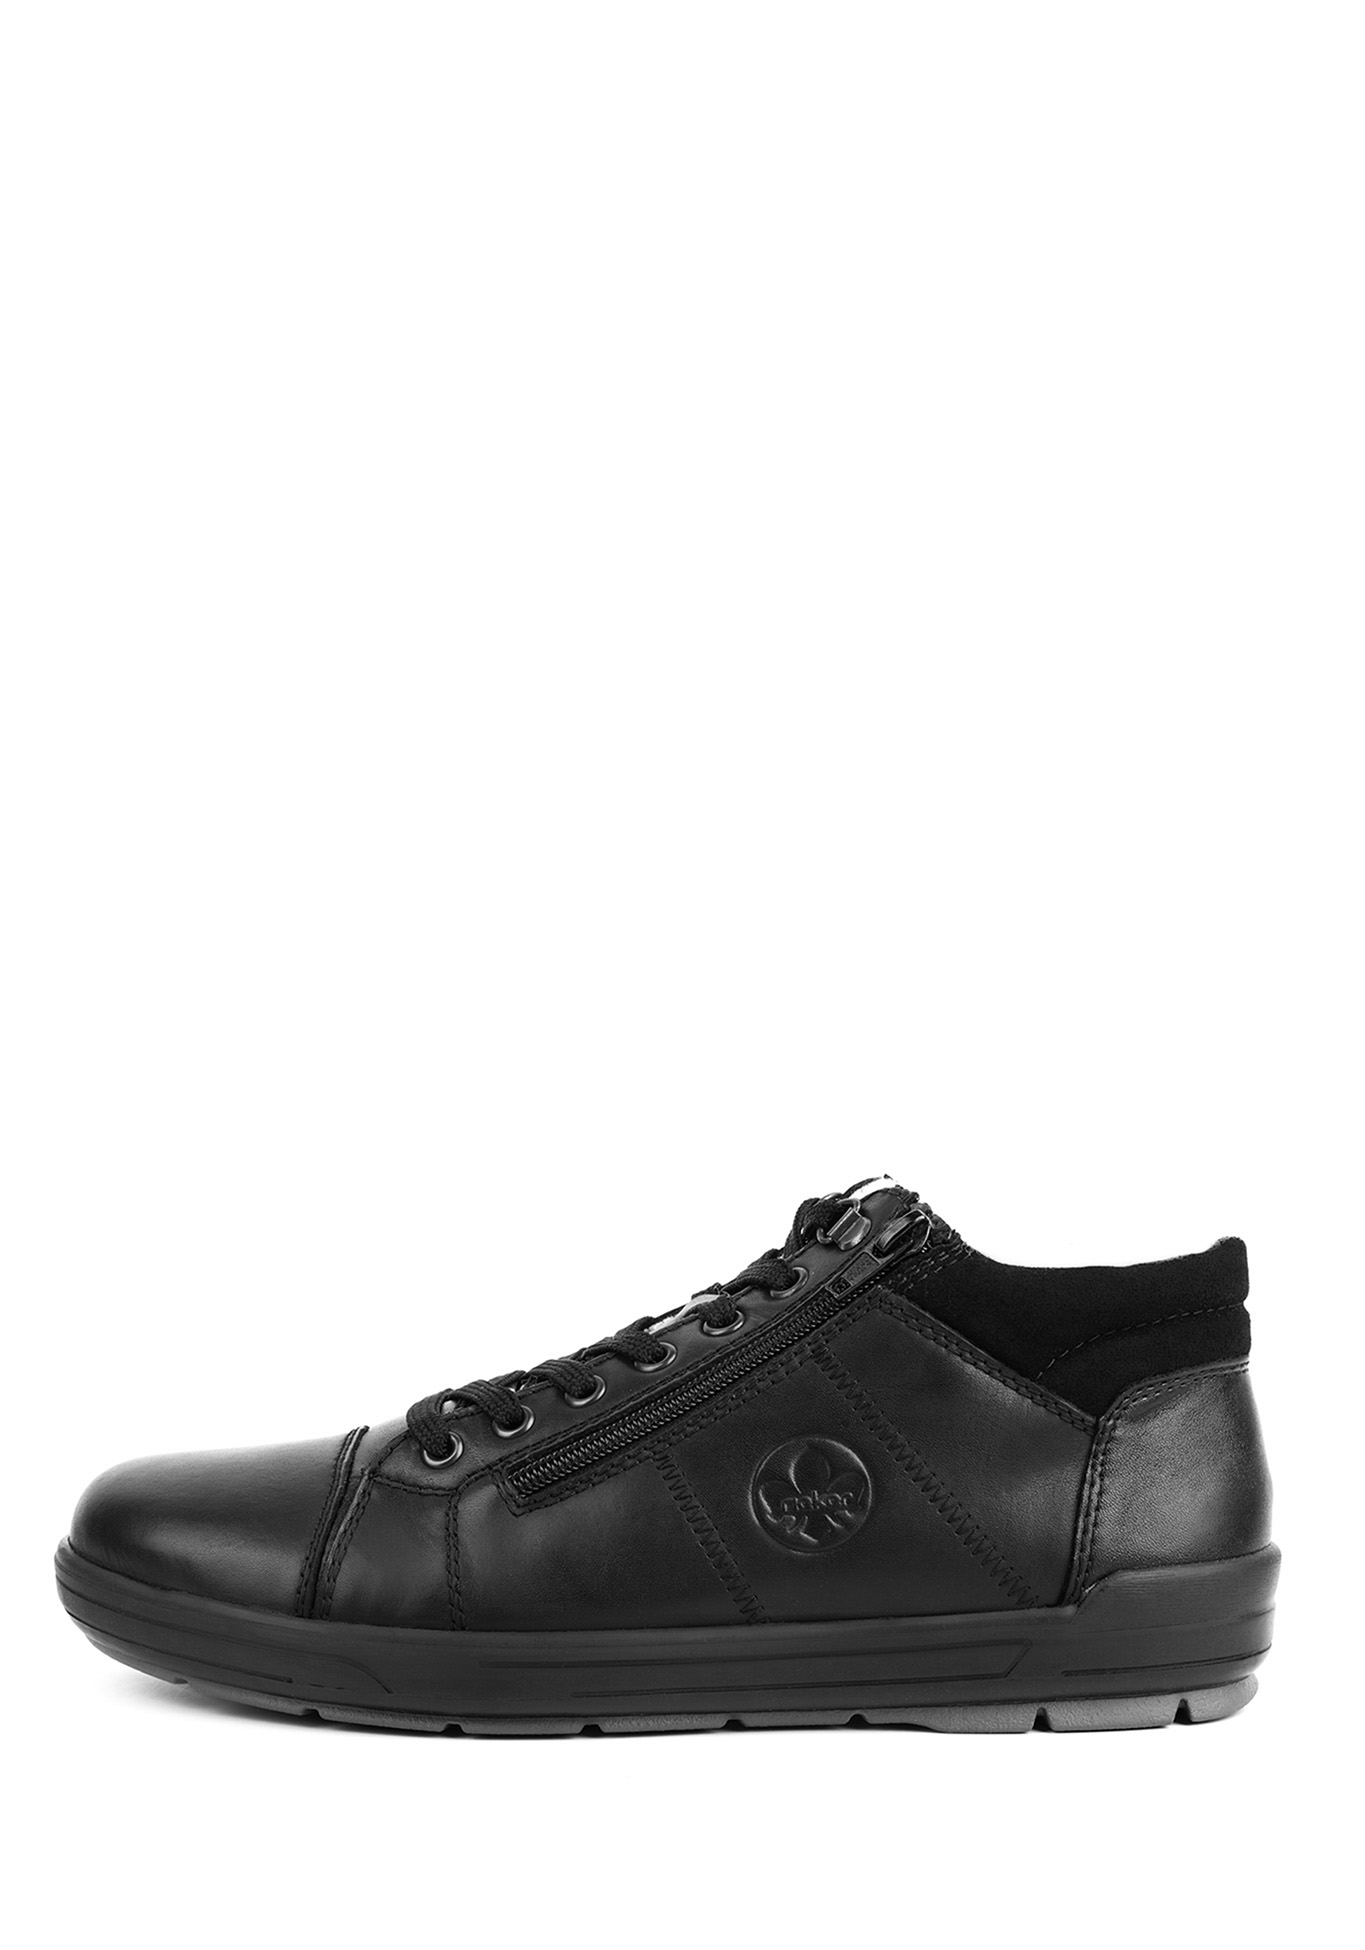 Ботинки мужские "Франческо" Rieker, размер 45, цвет черный - фото 2